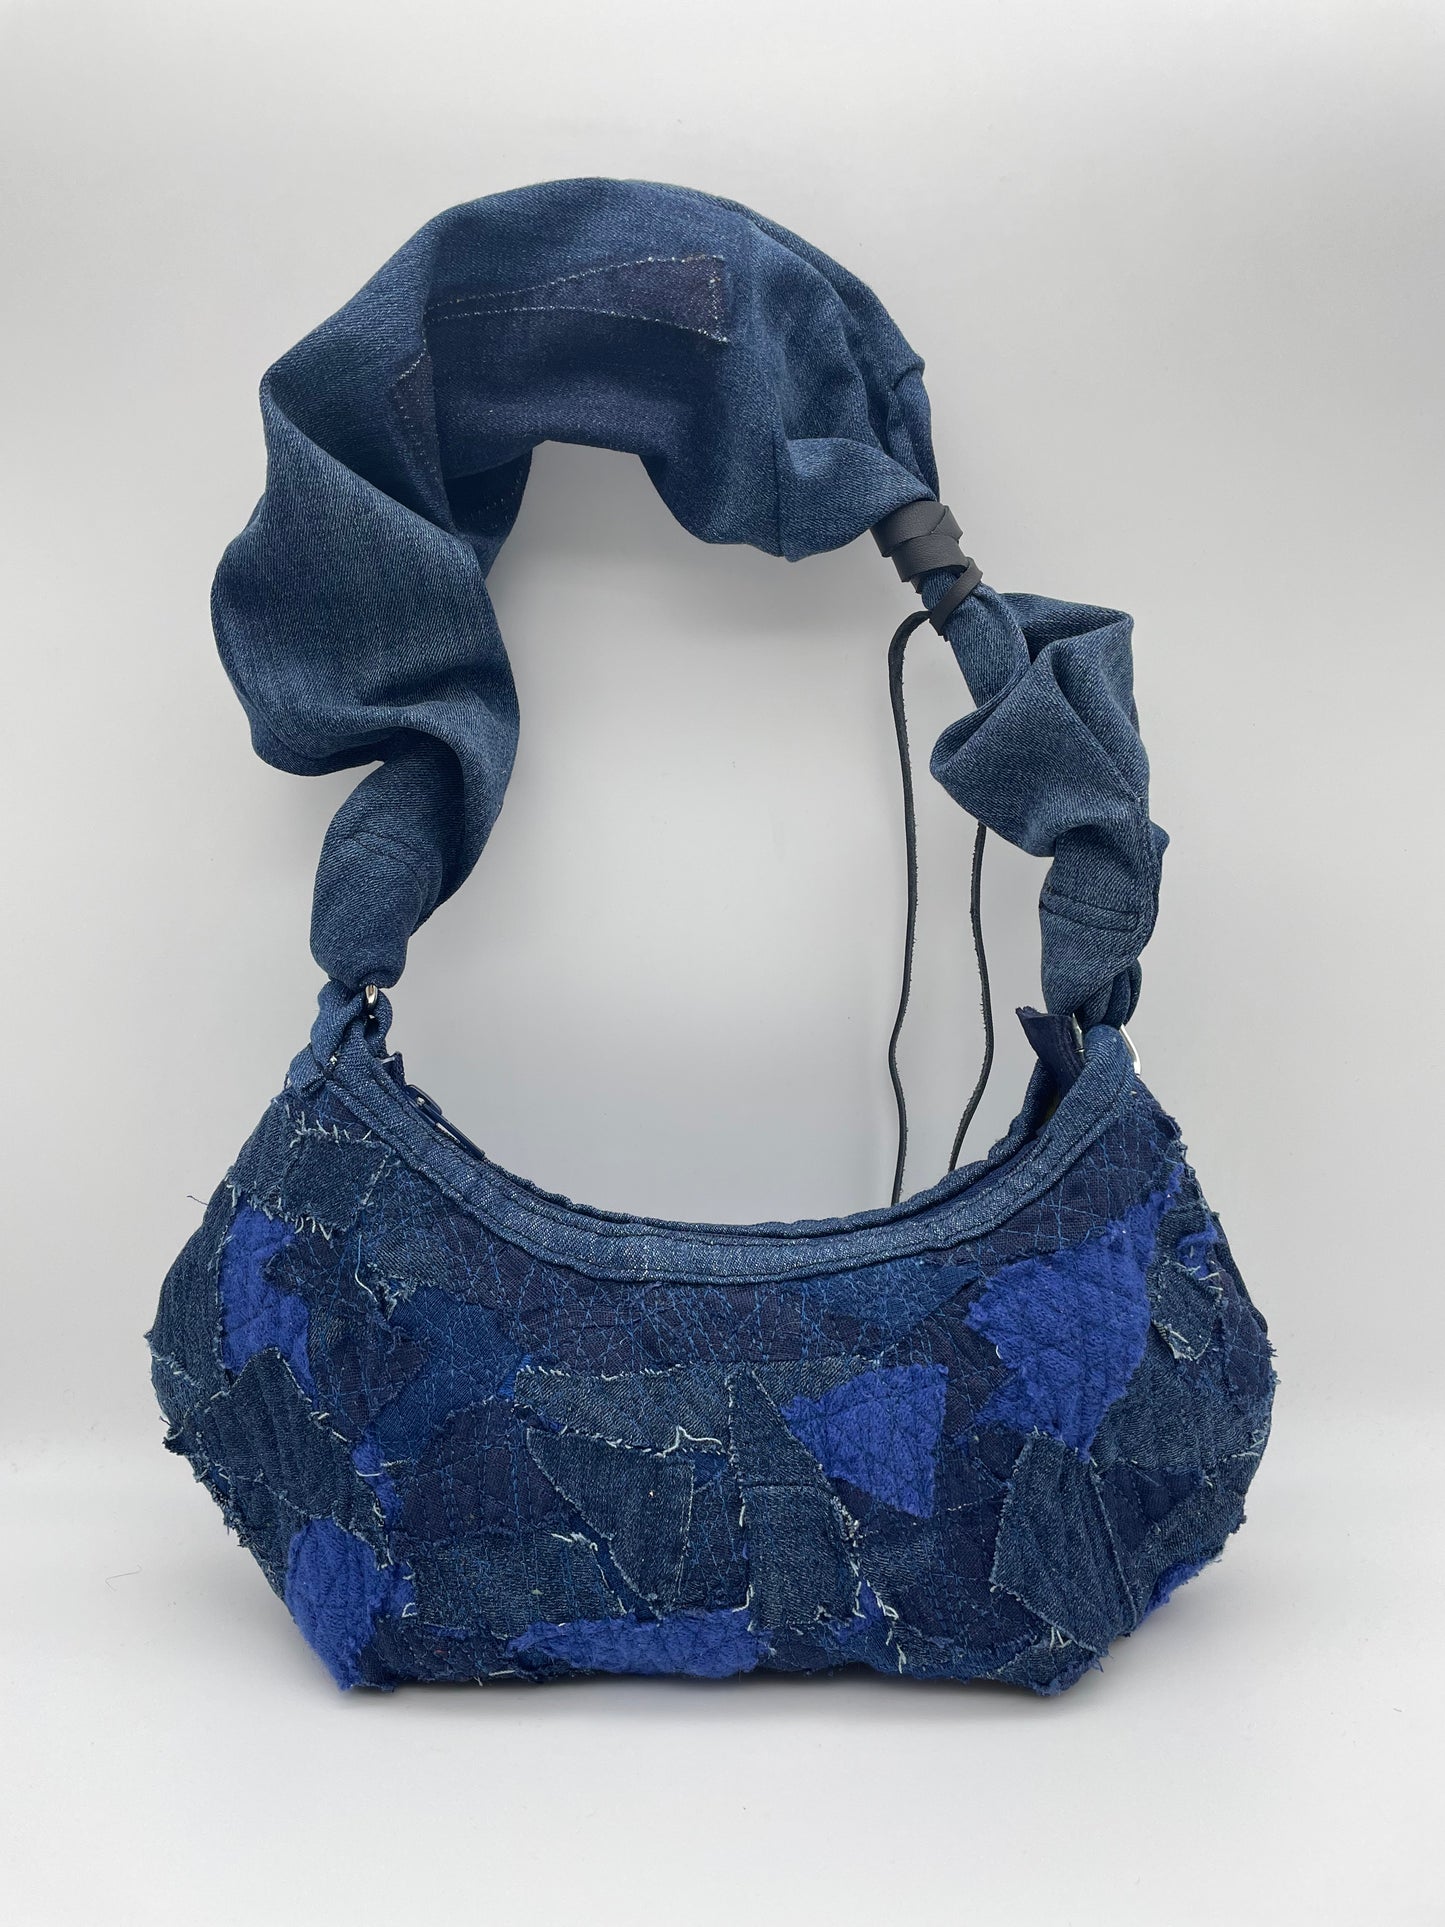 upcycled blue denim bag scrunchy bag zerowaste leather waste crazy sewed handbag